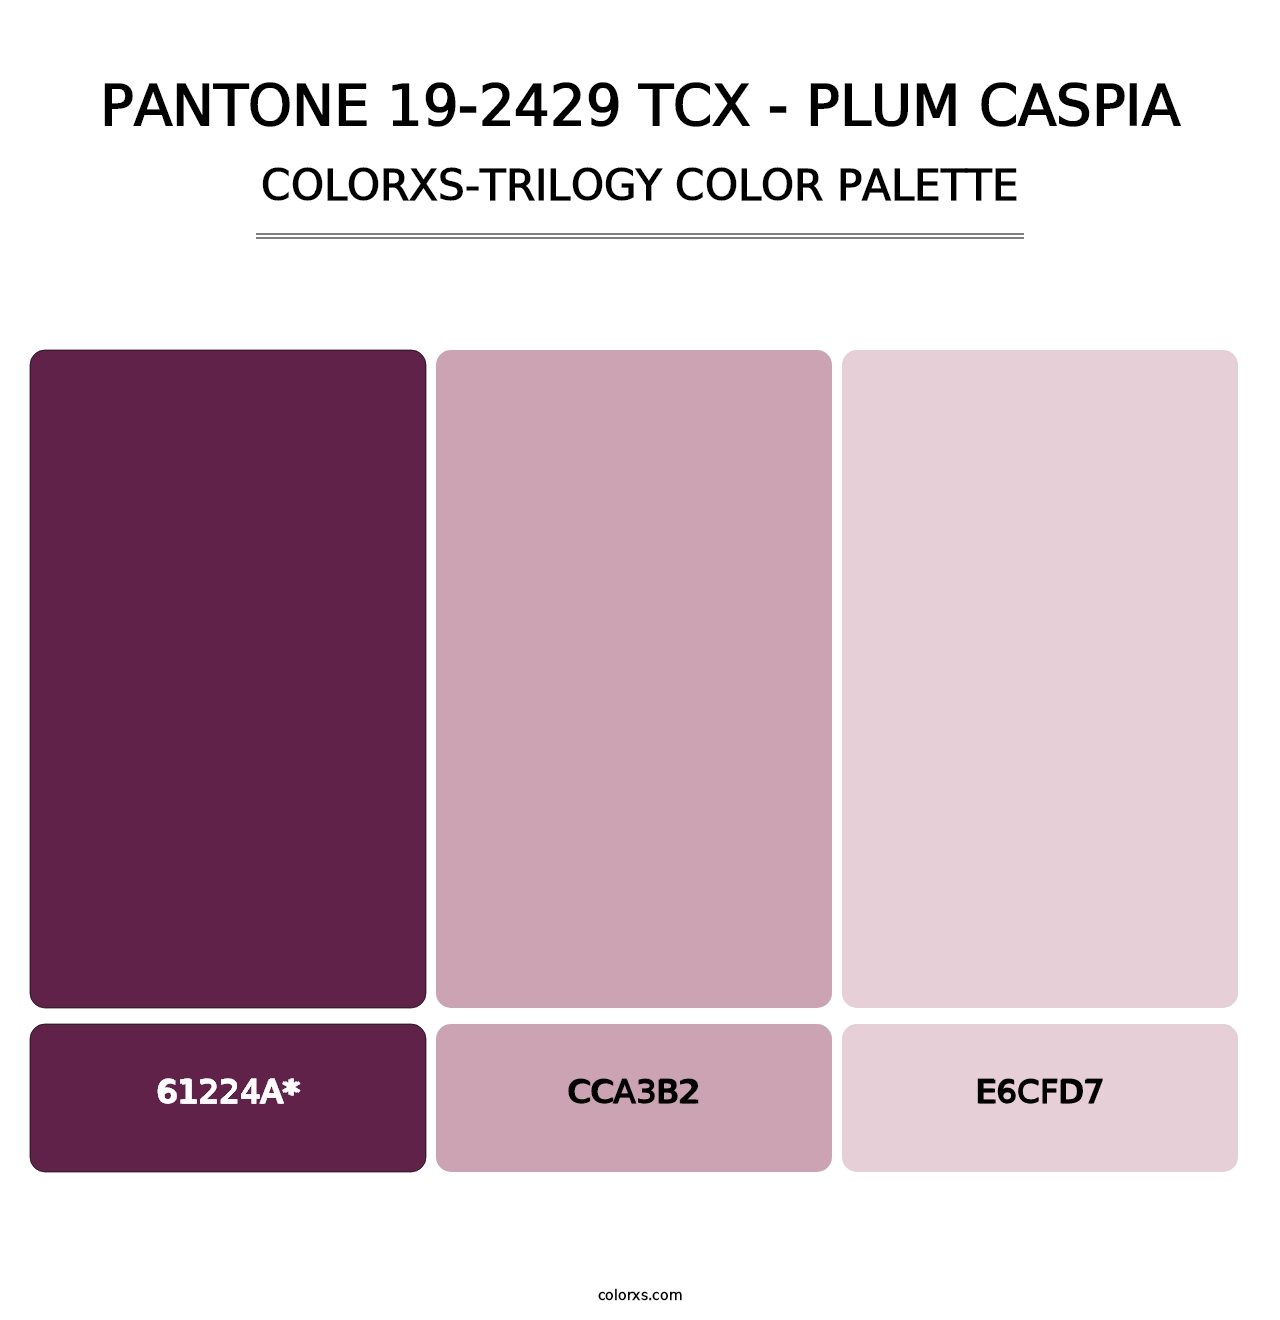 PANTONE 19-2429 TCX - Plum Caspia - Colorxs Trilogy Palette